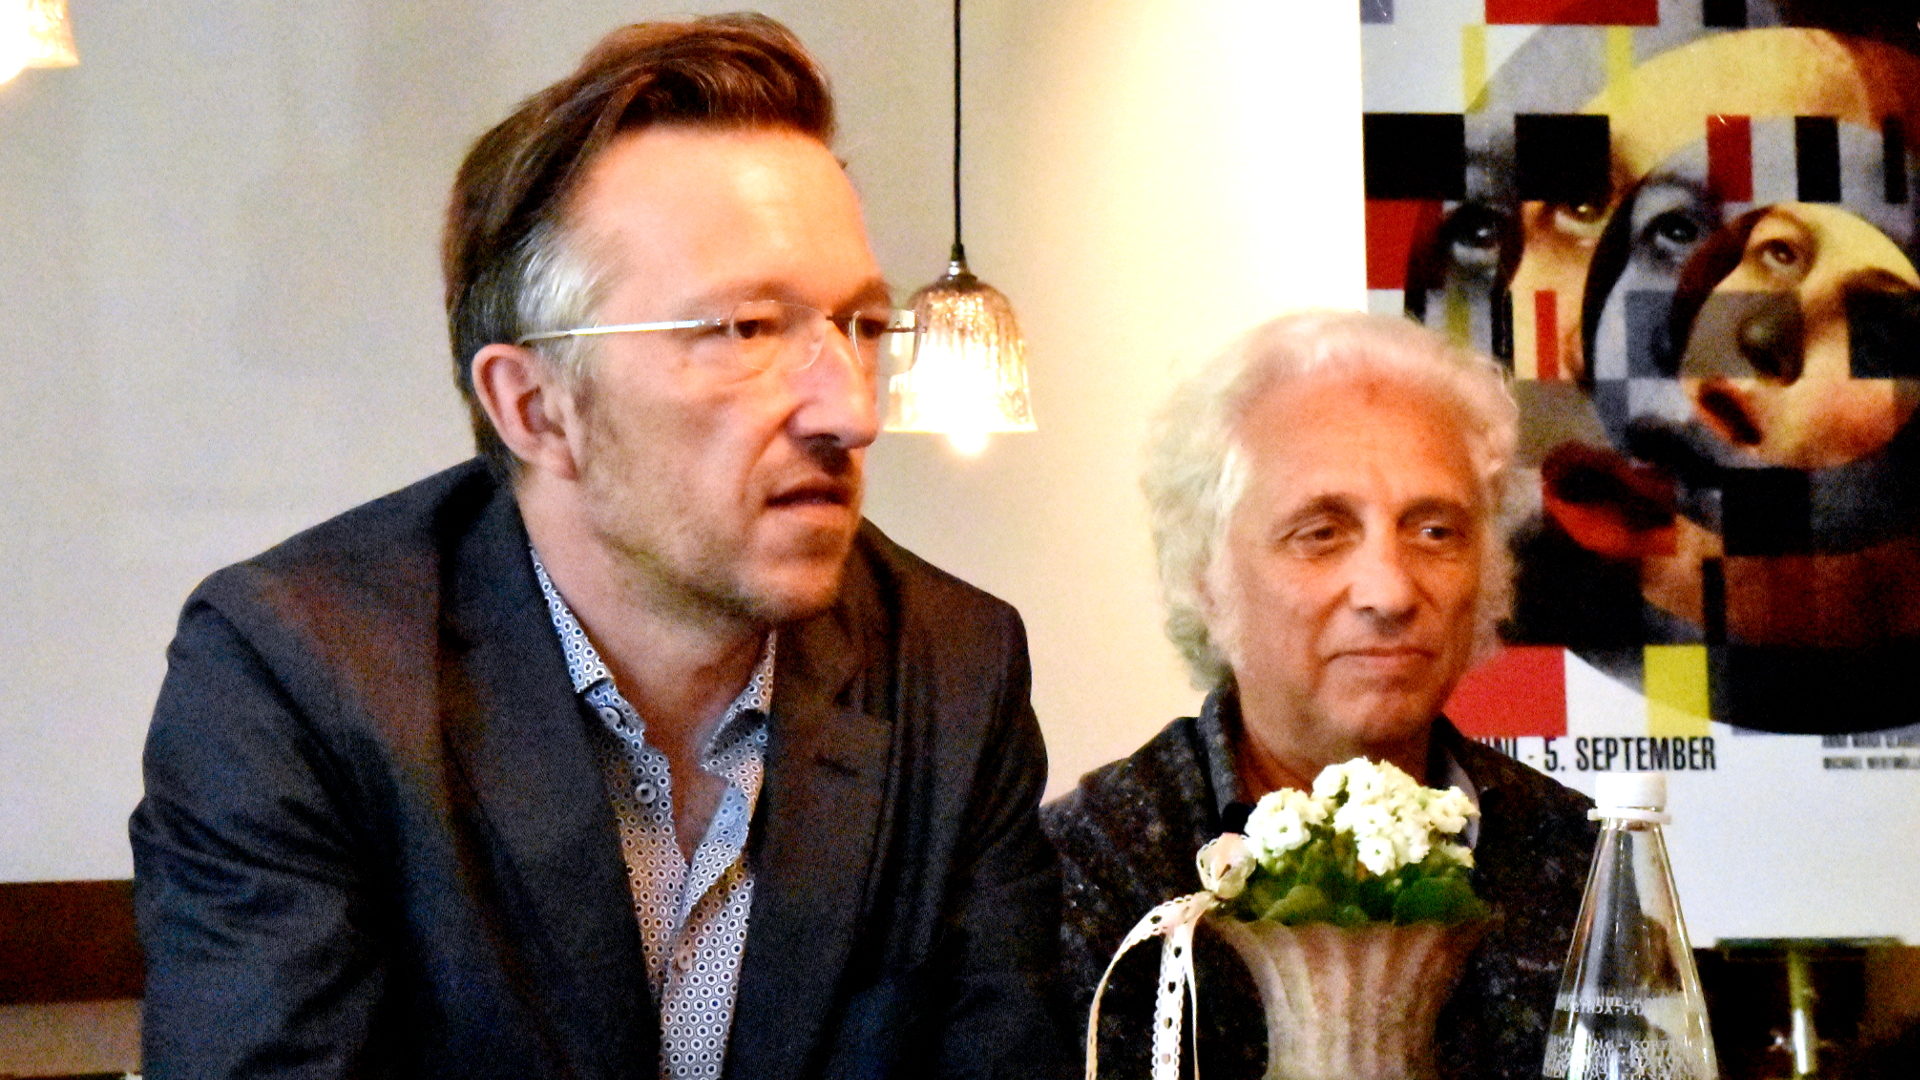 Autor Lukas Bärfuss (links) und Livio Andreina an der Medienkonferenz in Einsiedeln